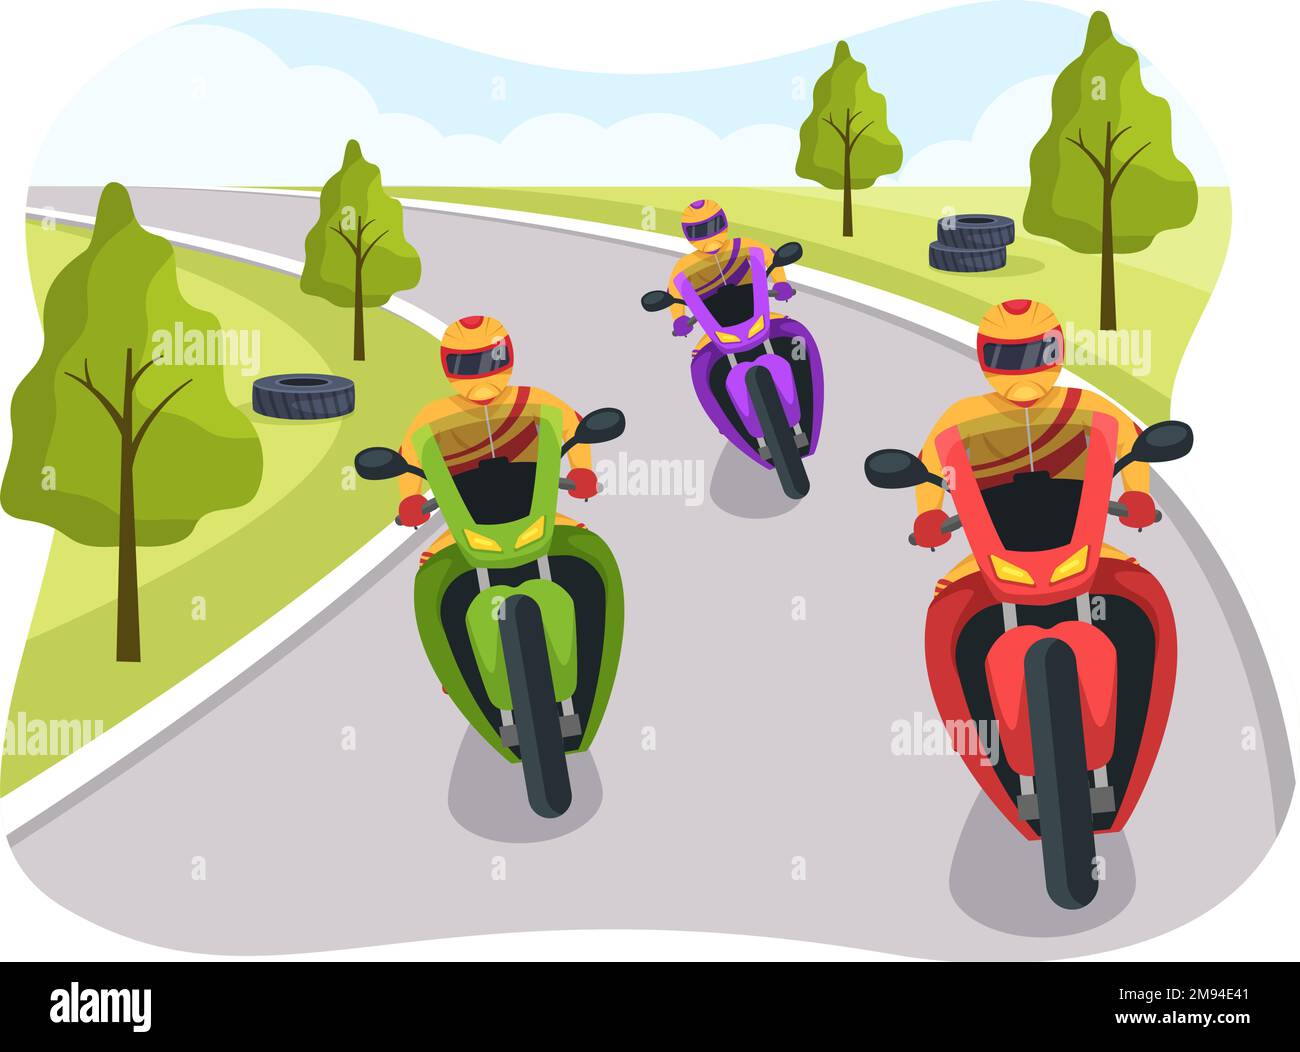 Championnat de course de moto sur l'hippodrome Illustration avec Racer Riding Motor for Landing page dans Flat Cartoon modèles dessinés à la main Illustration de Vecteur